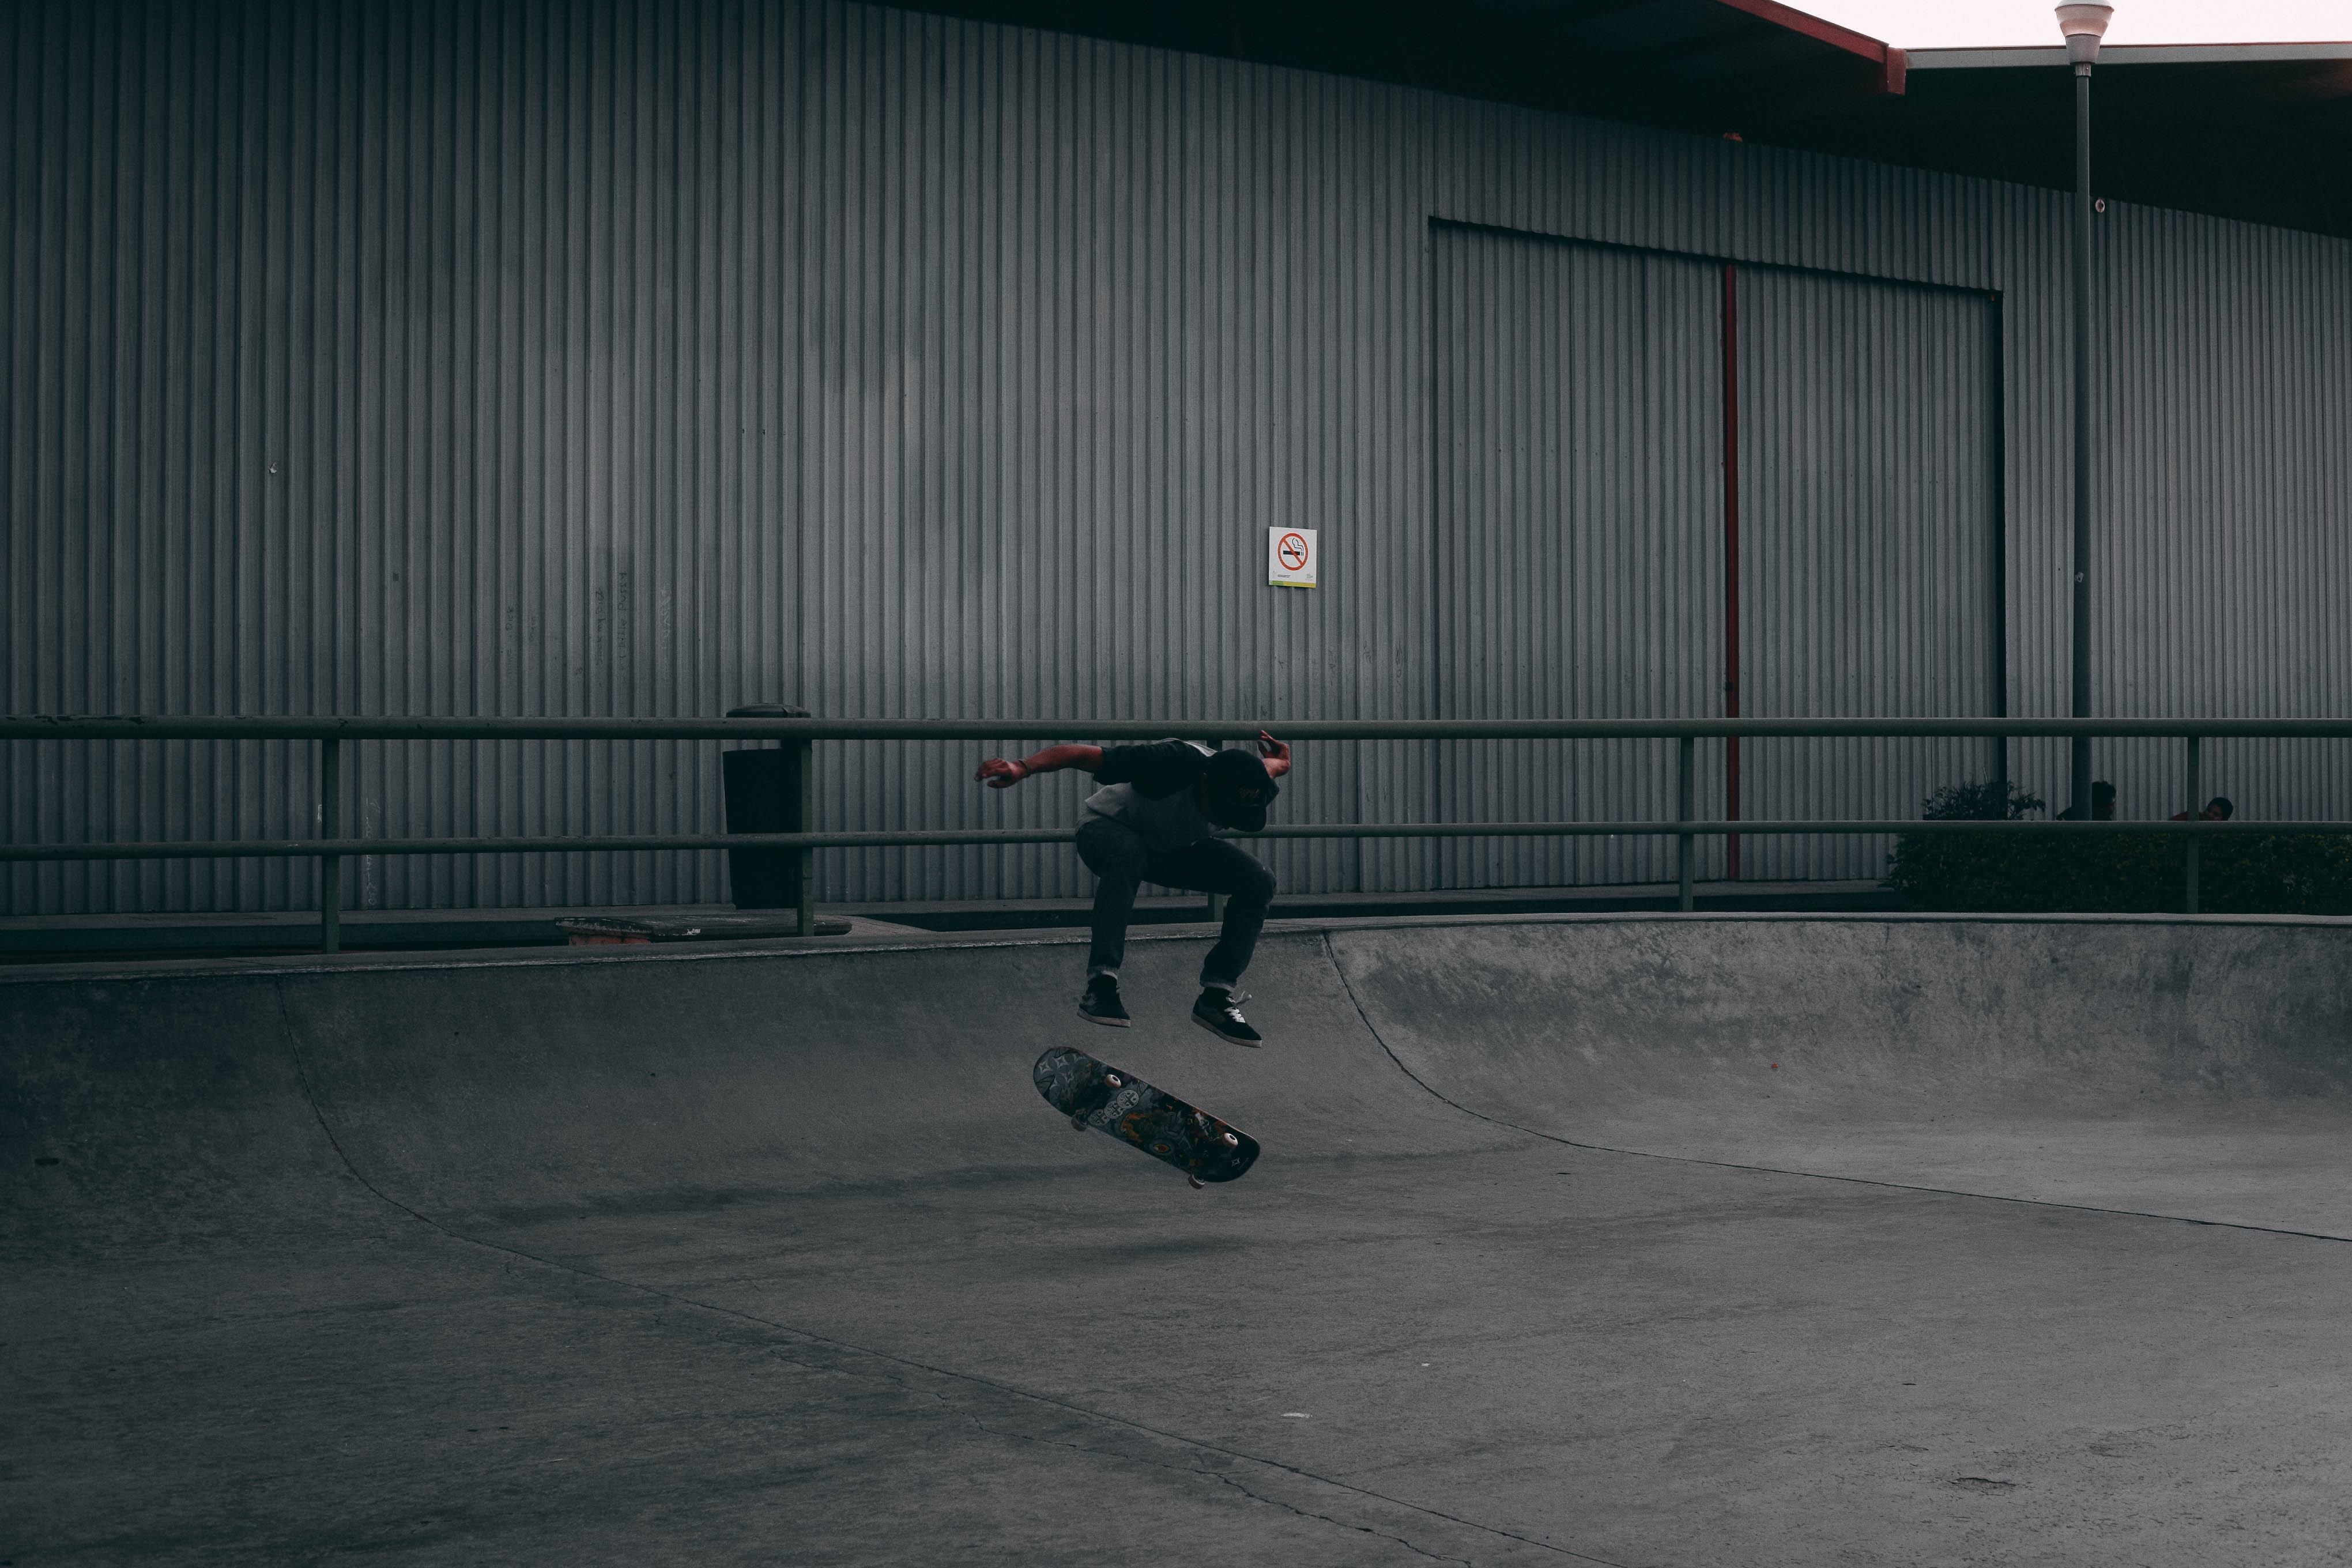 man in black shirt skateboardin